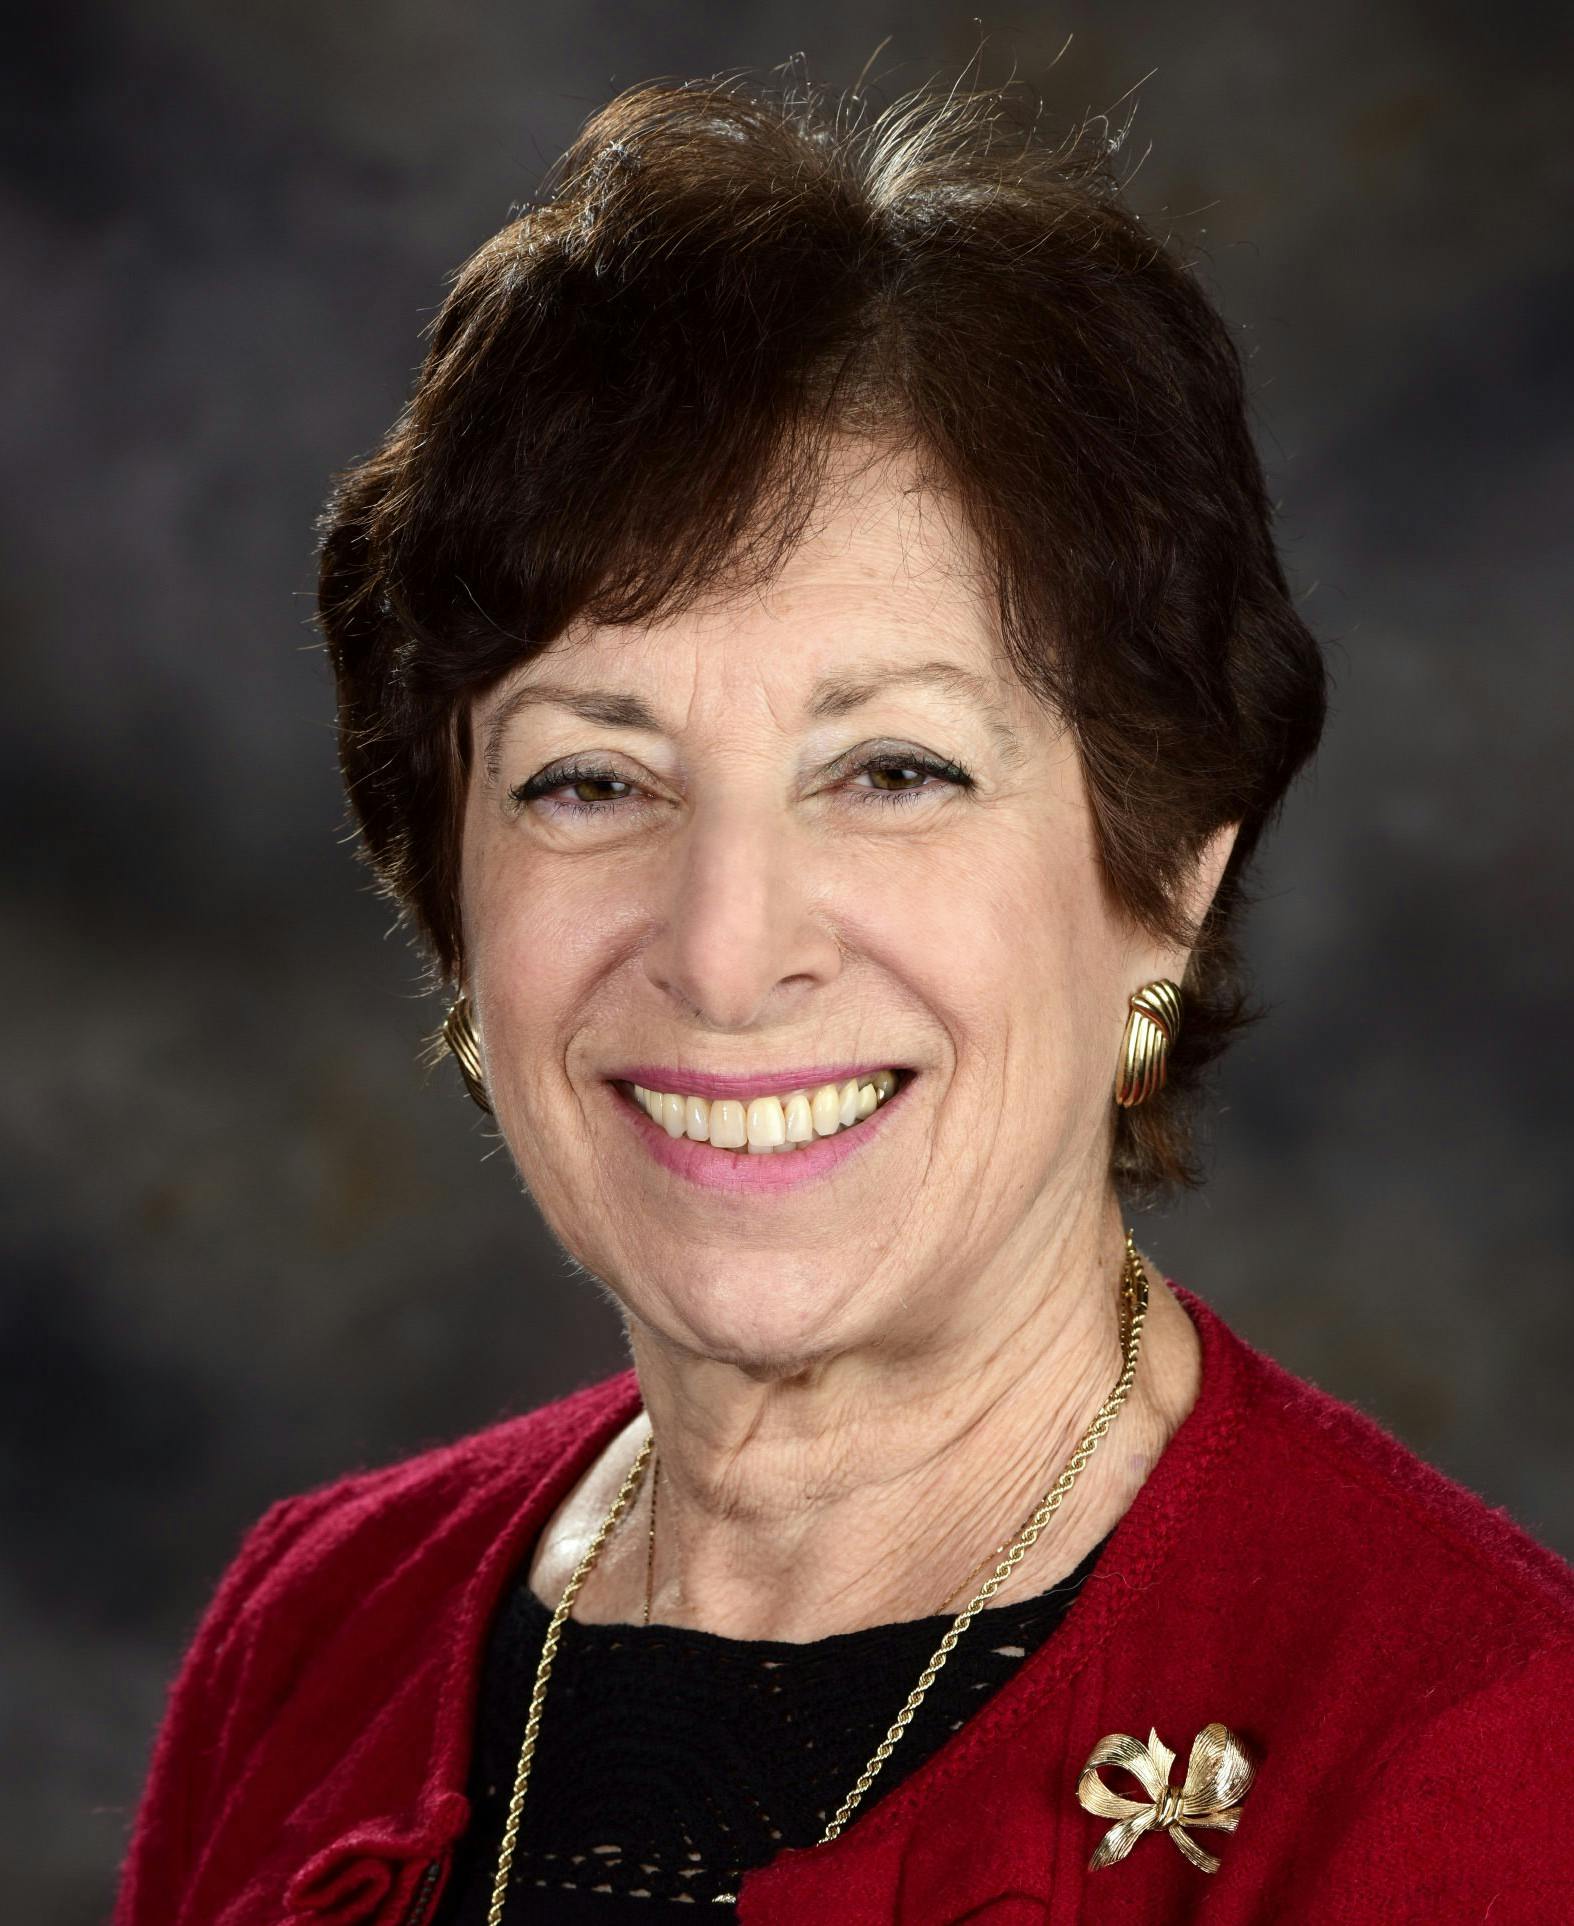 Dr. Linda Birnbaum, scientist emeritus, former director of NIEHS, discusses PFAS